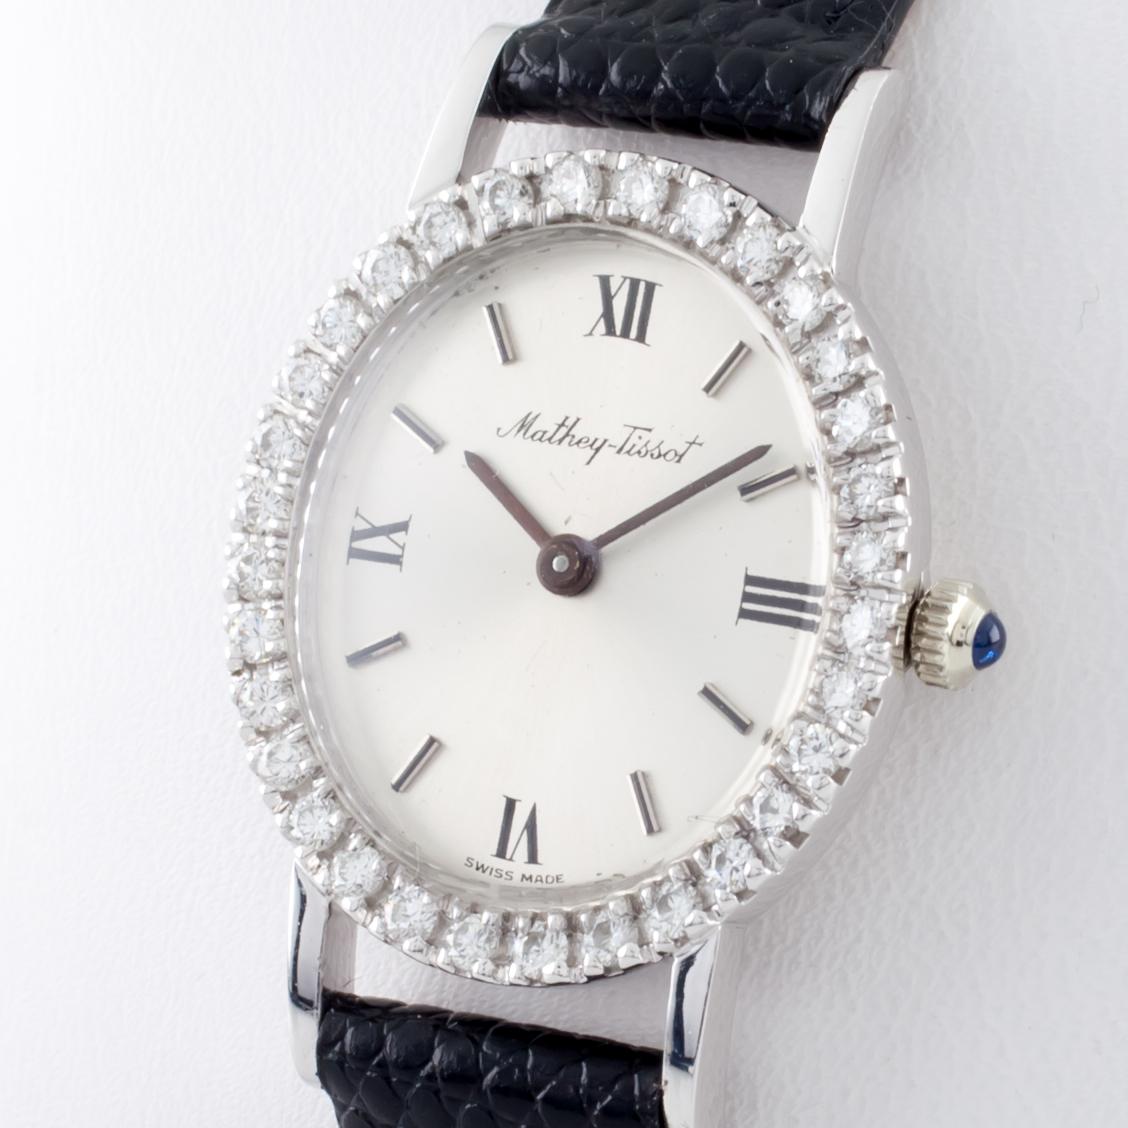 18 Karat Gold Mathey-Tissot Handaufzug Uhr mit Diamant-Lünette & Lederband (Rundschliff)